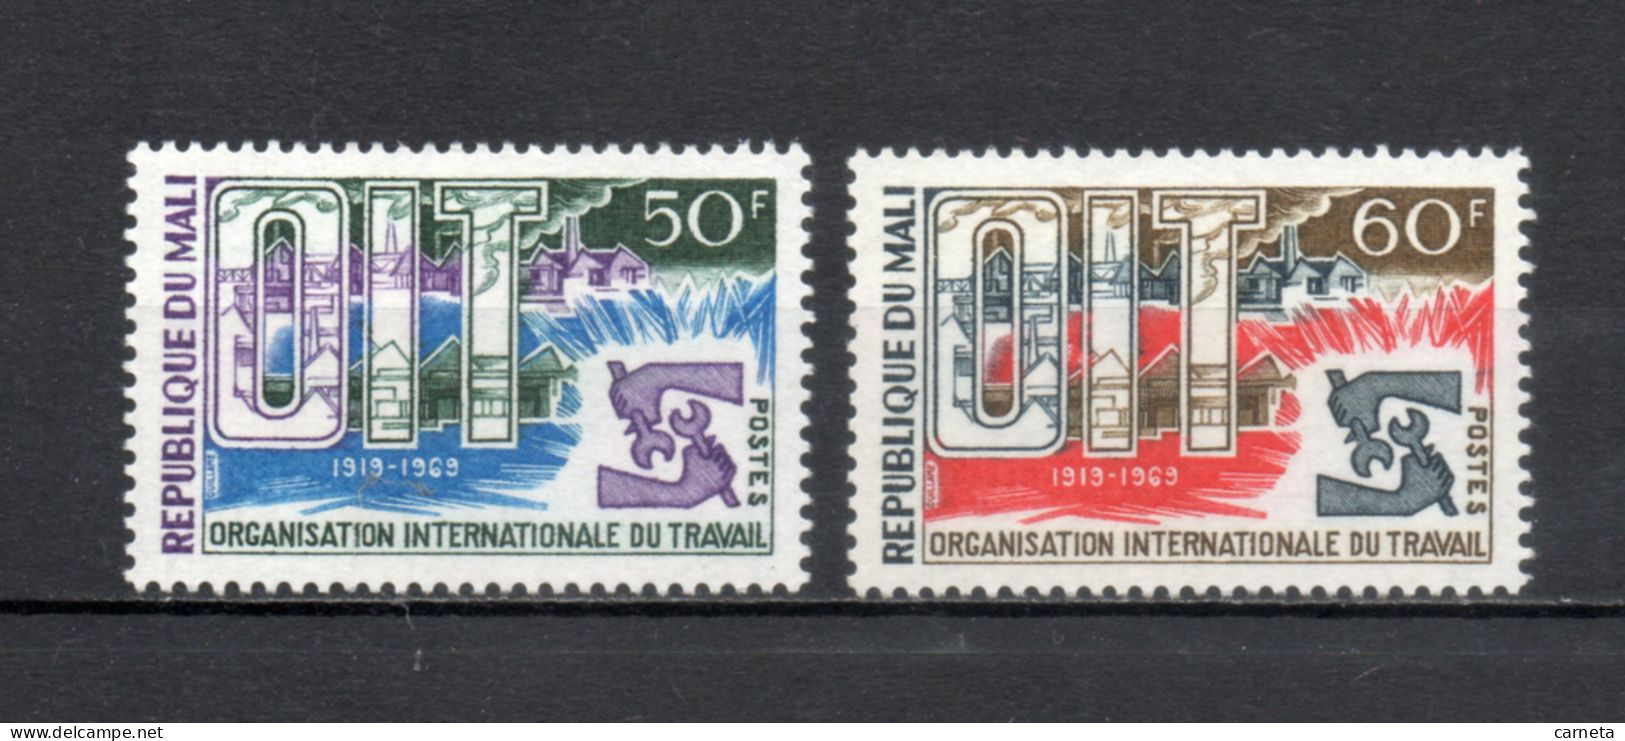 MALI  N° 116 + 117   NEUFS SANS CHARNIERE  COTE 2.00€    TRAVAIL OIT - Mali (1959-...)